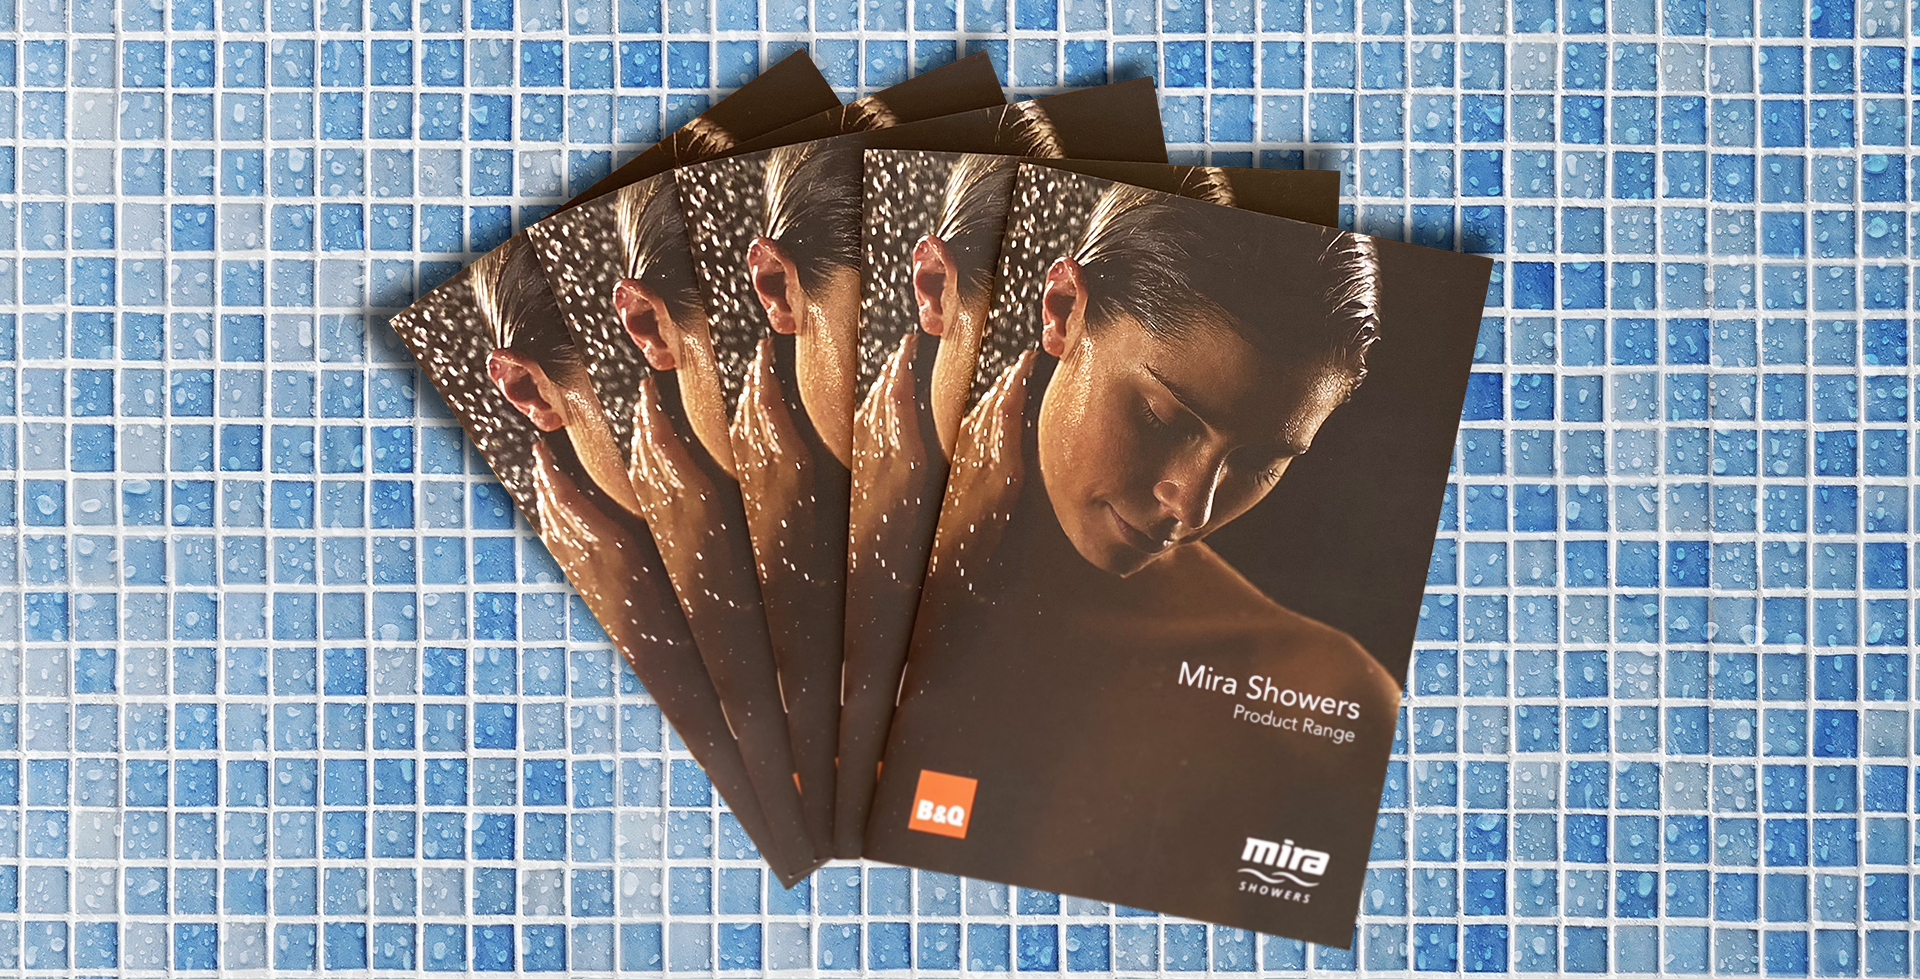 Kohler Mira brochure covers